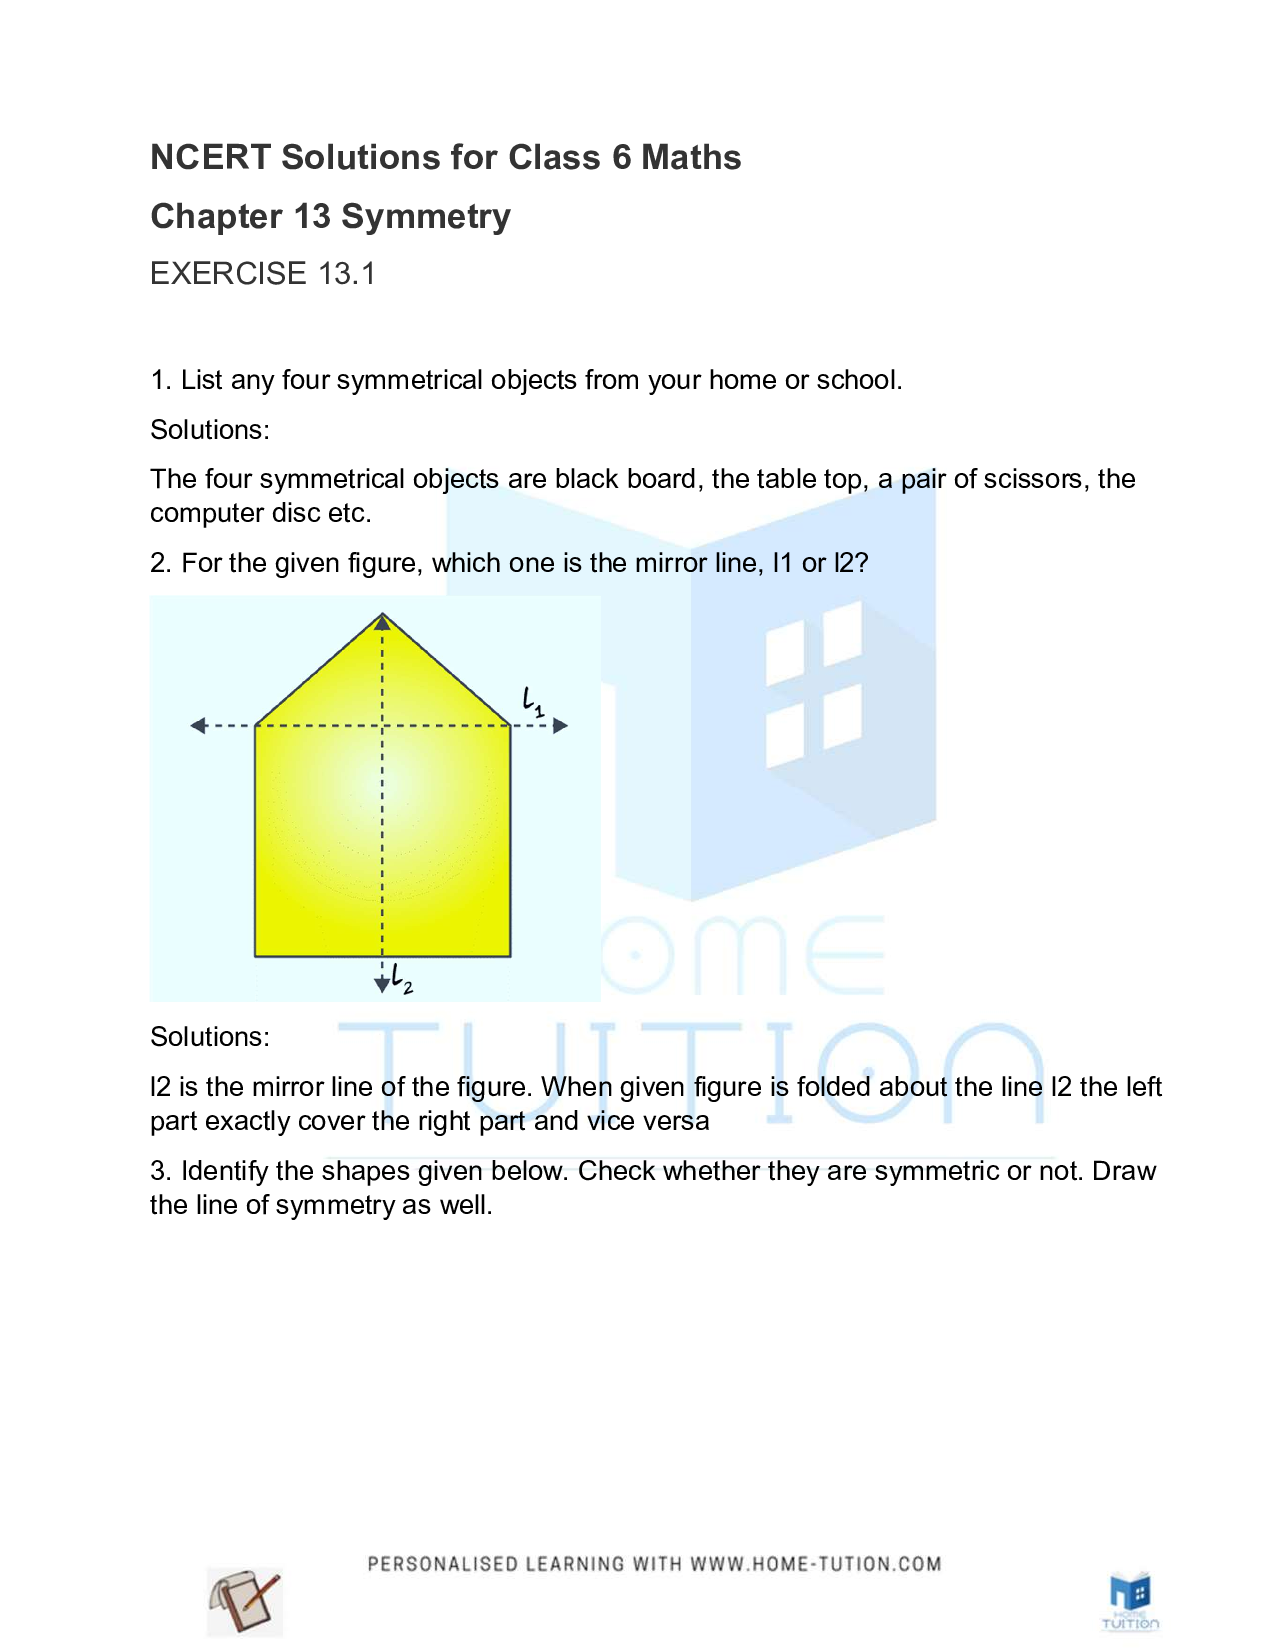 Class 6 Maths Chapter 13 Symmetry